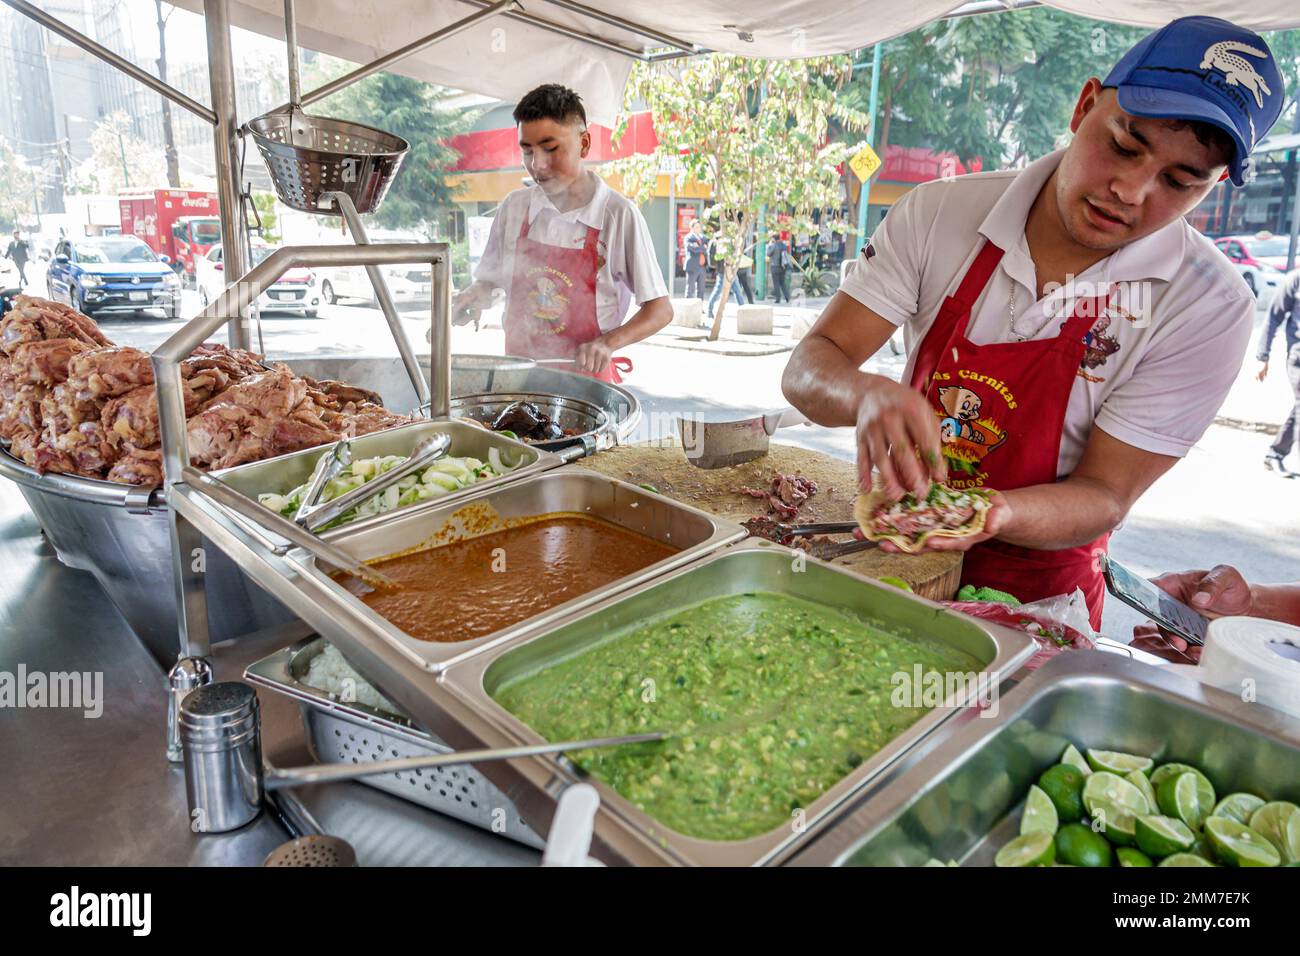 Ciudad de México, Avenida Paseo de la Reforma, vendedor de comida callejera, cocinar preparando, tacos de carnitas, hombre hombre hombre, adultos adultos, residentes Foto de stock